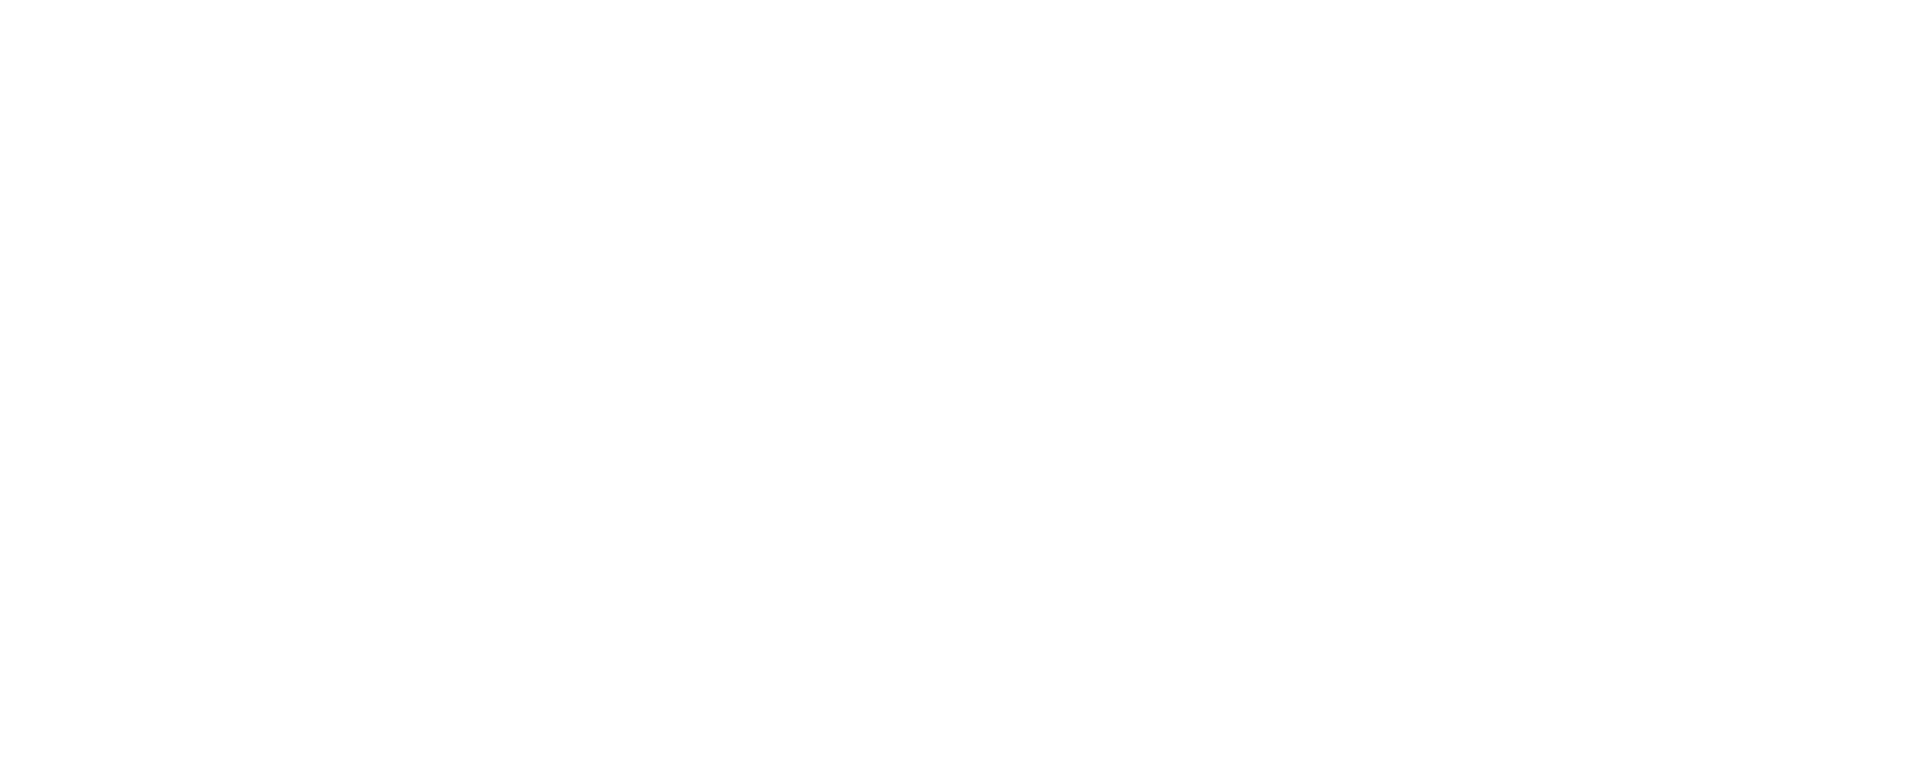 Cegid Connexions Expertise-Comptable 2019